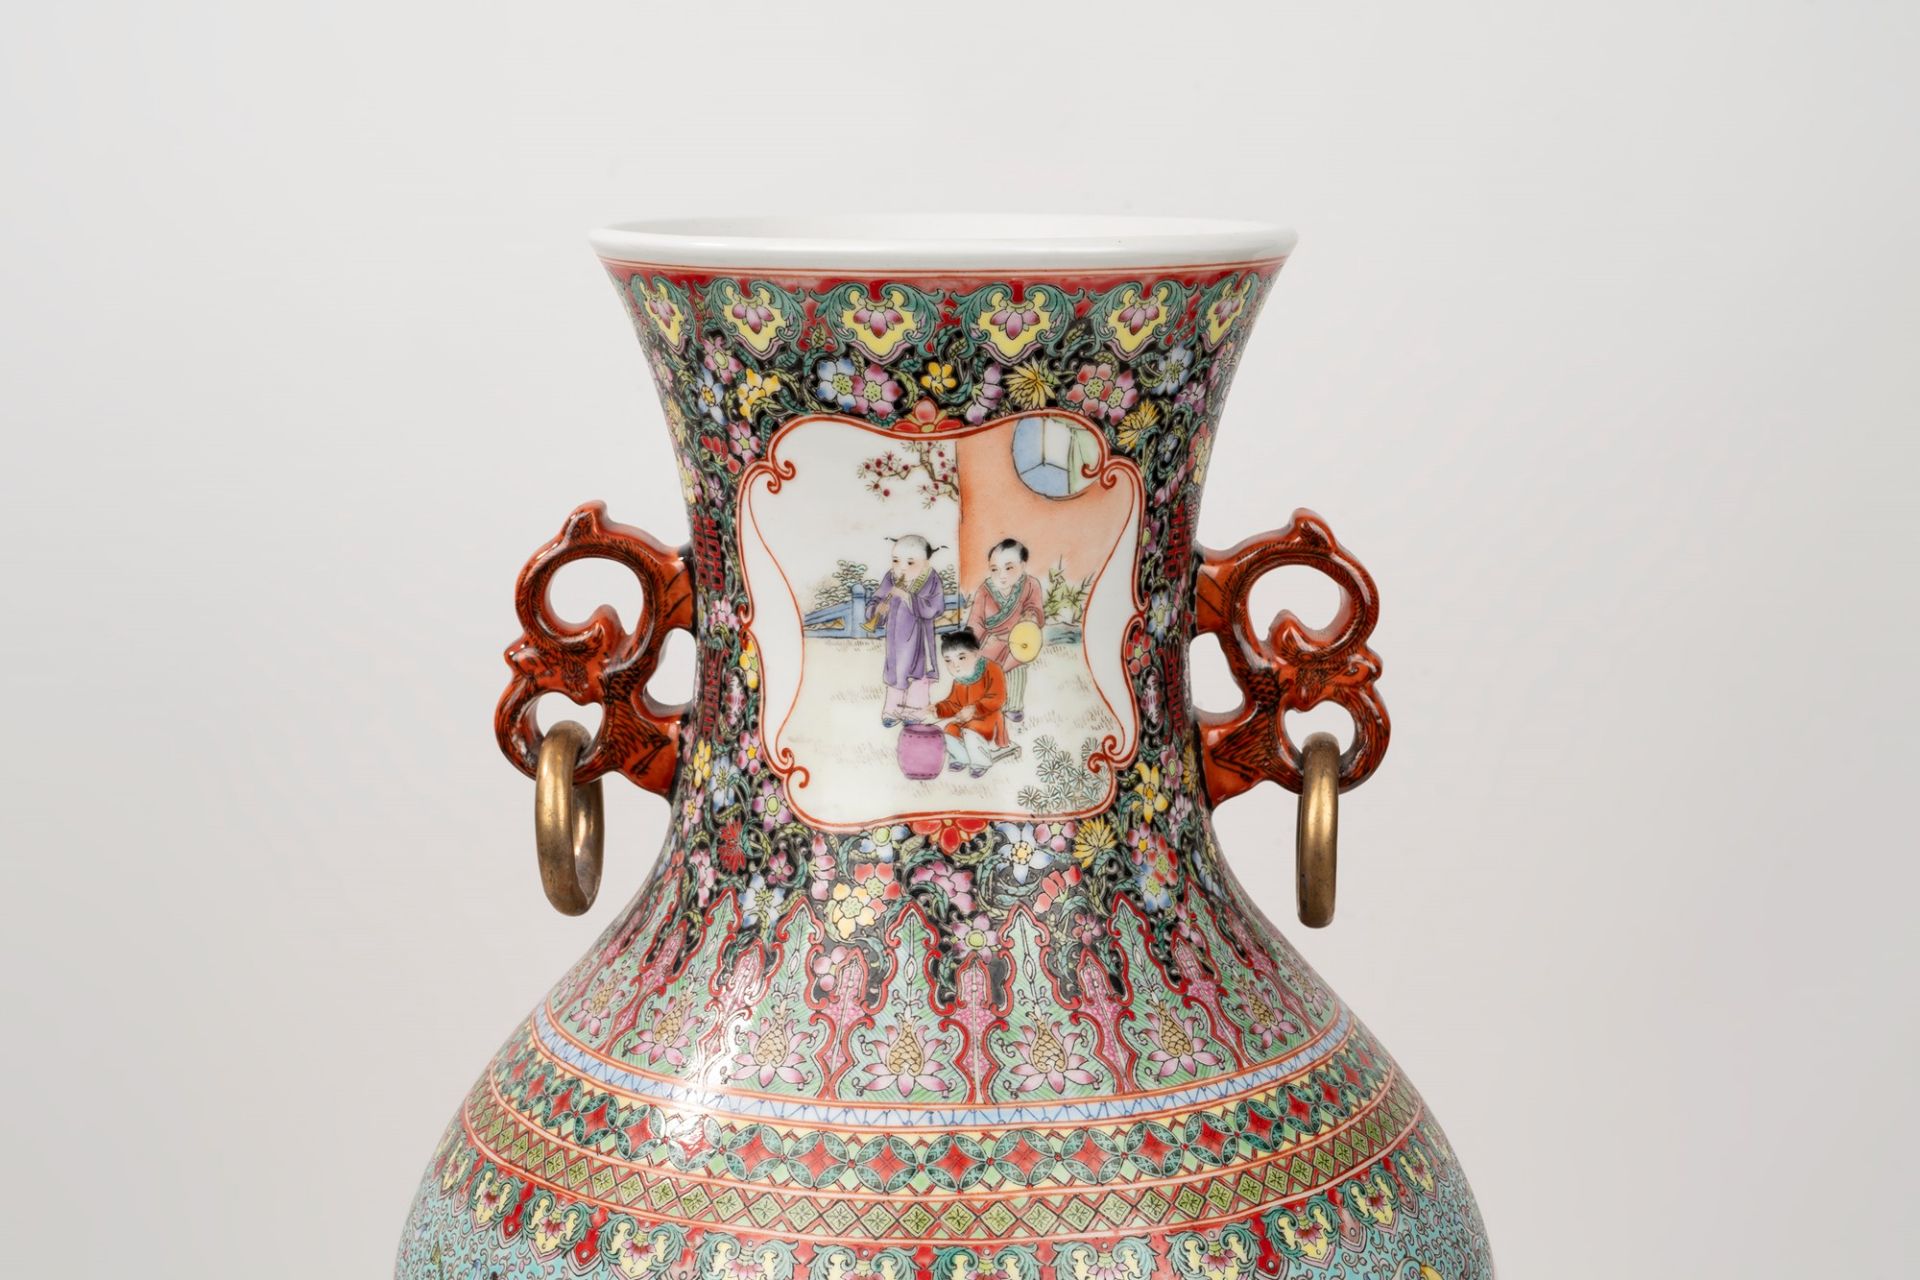 Polychrome porcelain vase, China, 20th century - Image 5 of 6